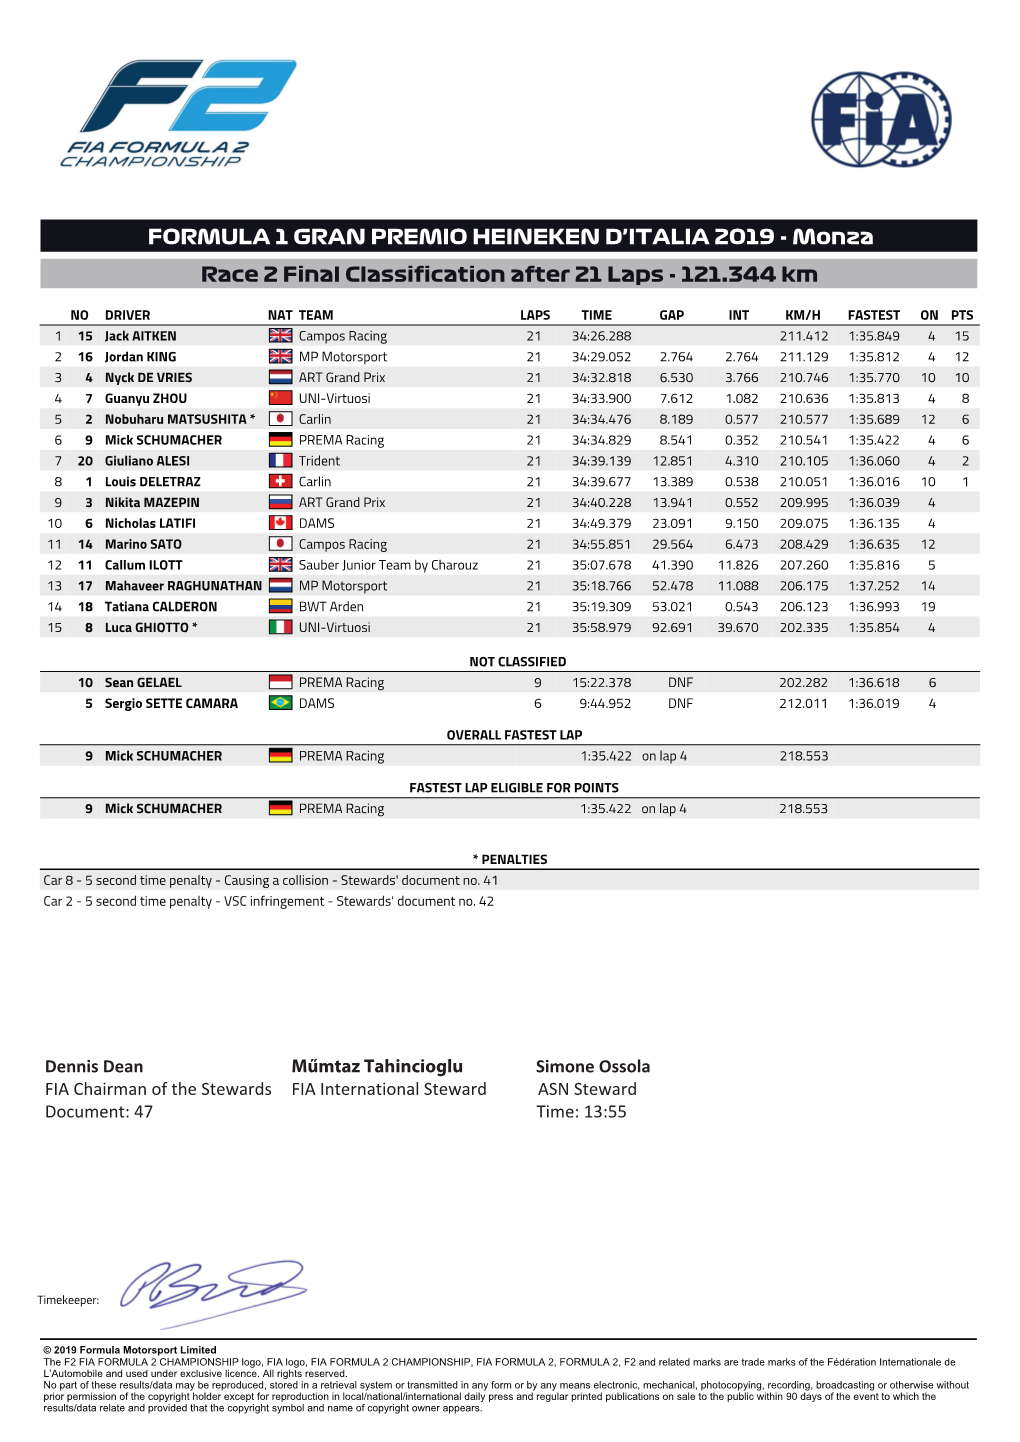 Monza Race 2 Final Classification After 21 Laps - 121.344 Km